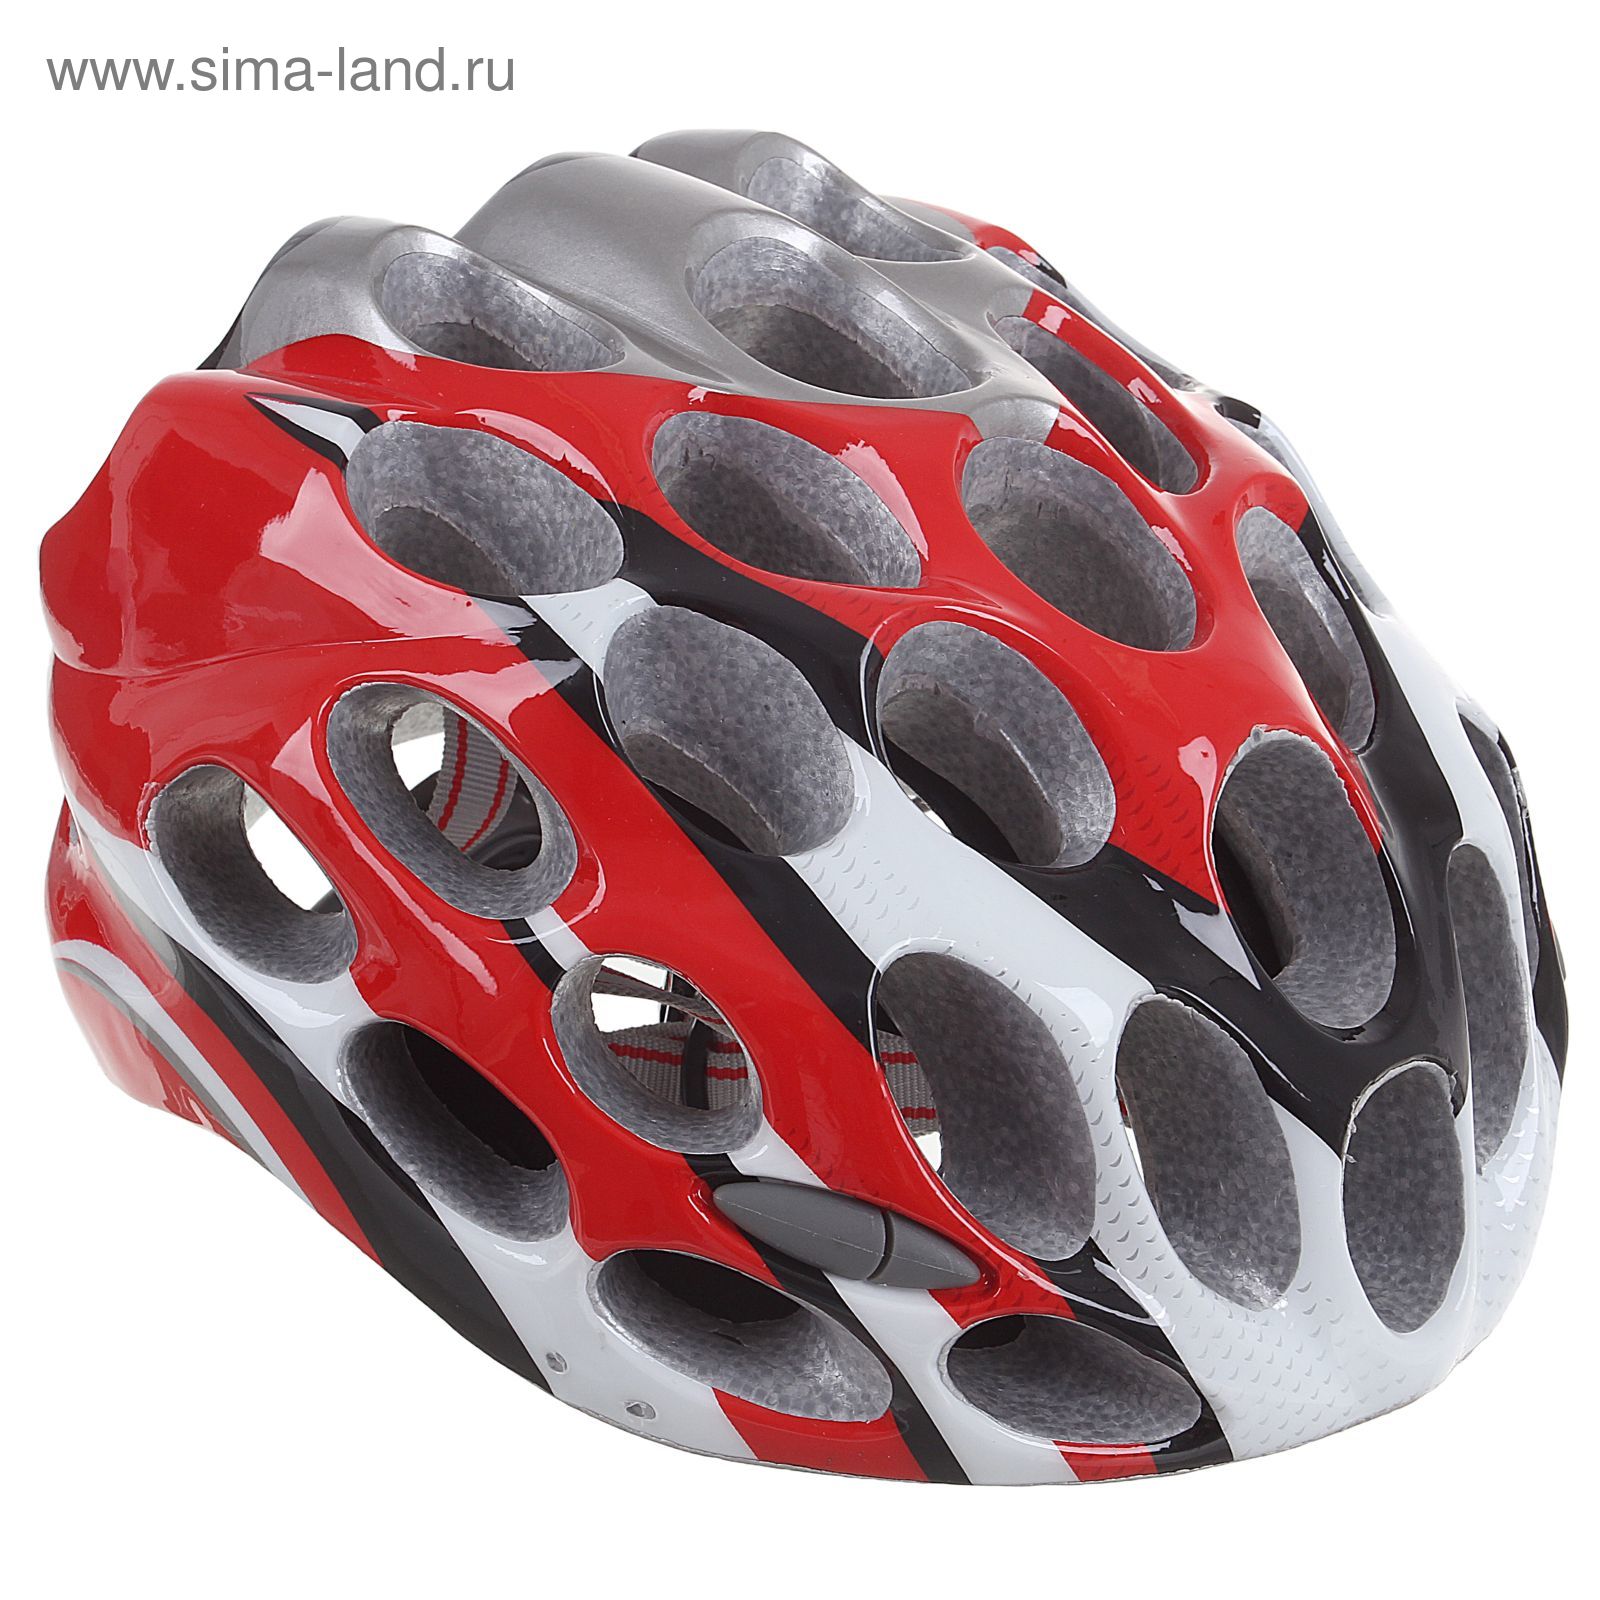 Шлем велосипедиста взрослый T39, размер 52-60 см, цвета МИКС